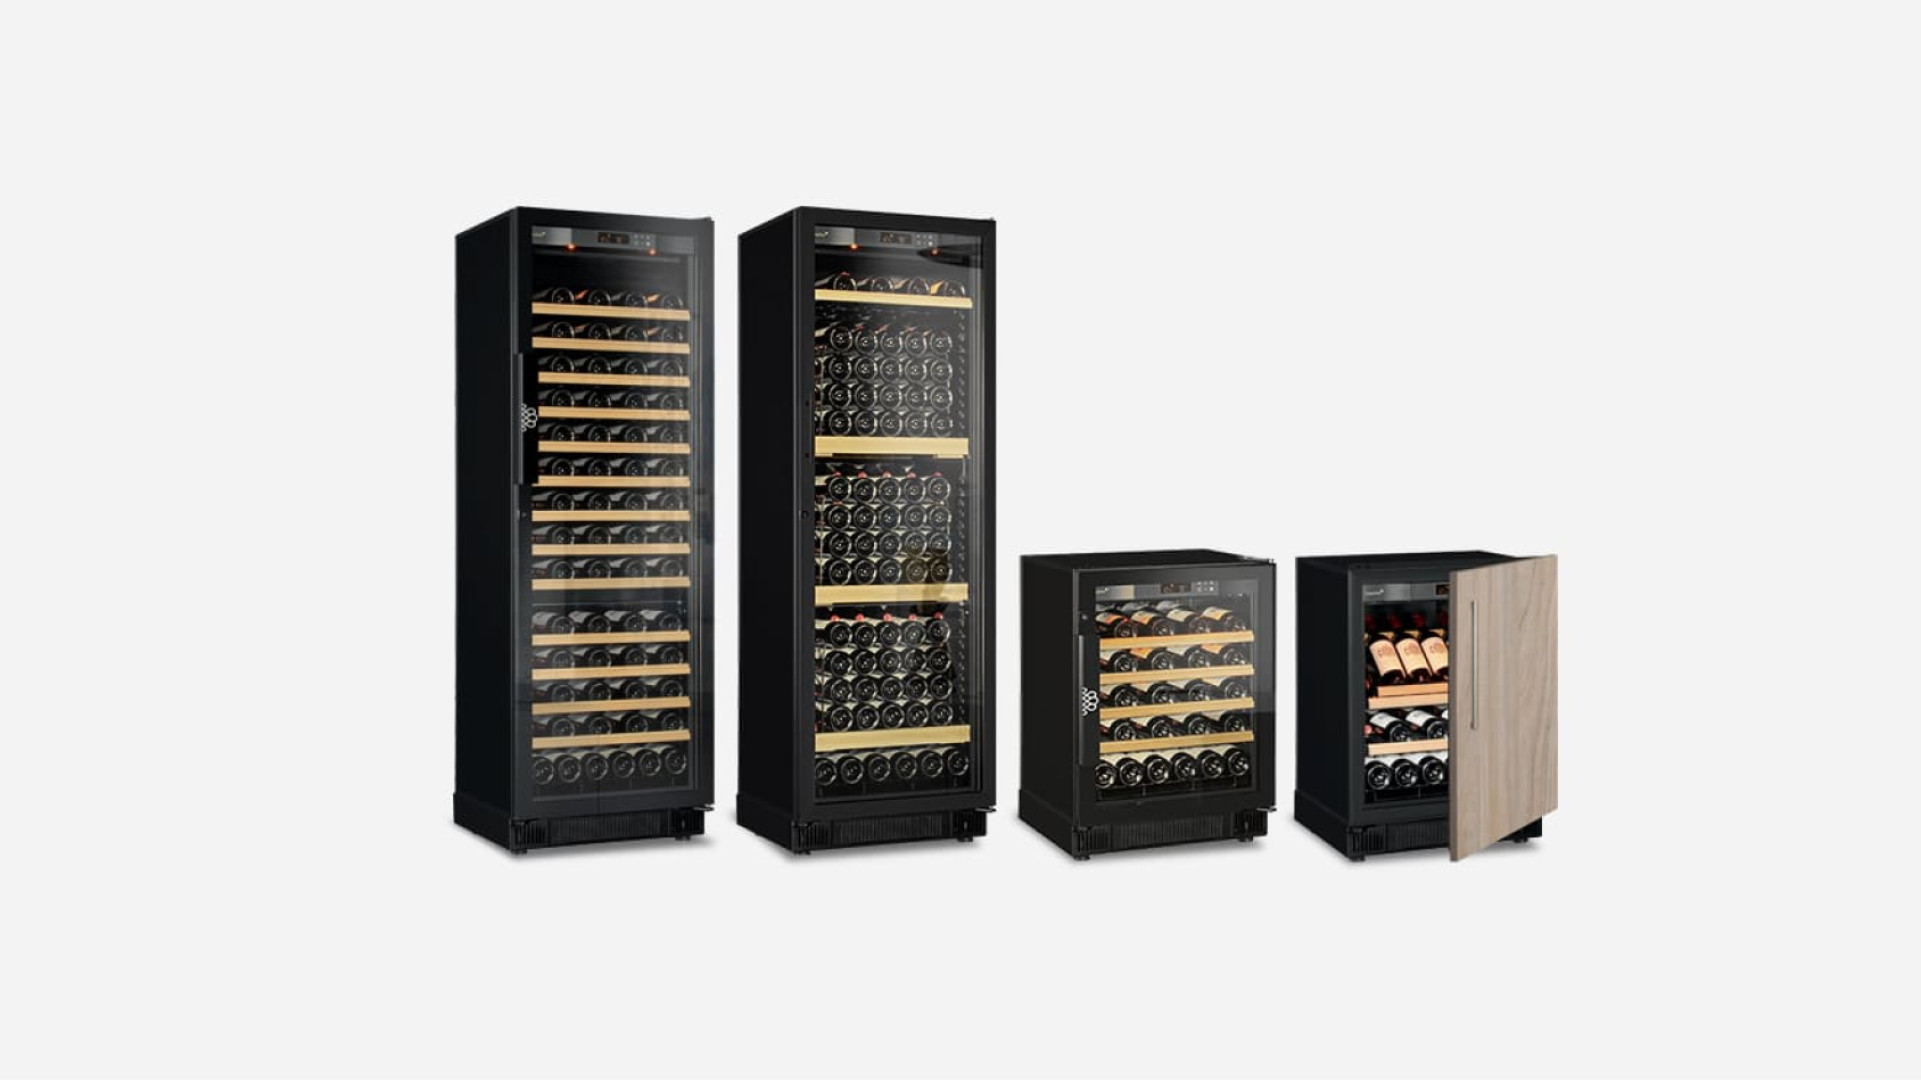 Auswahl an kompakten Einbau-Weinschränken, klein und groß, Service- oder Reifekeller, Tür wahlweise verglast oder technisch undurchsichtig. Compact EuroCave